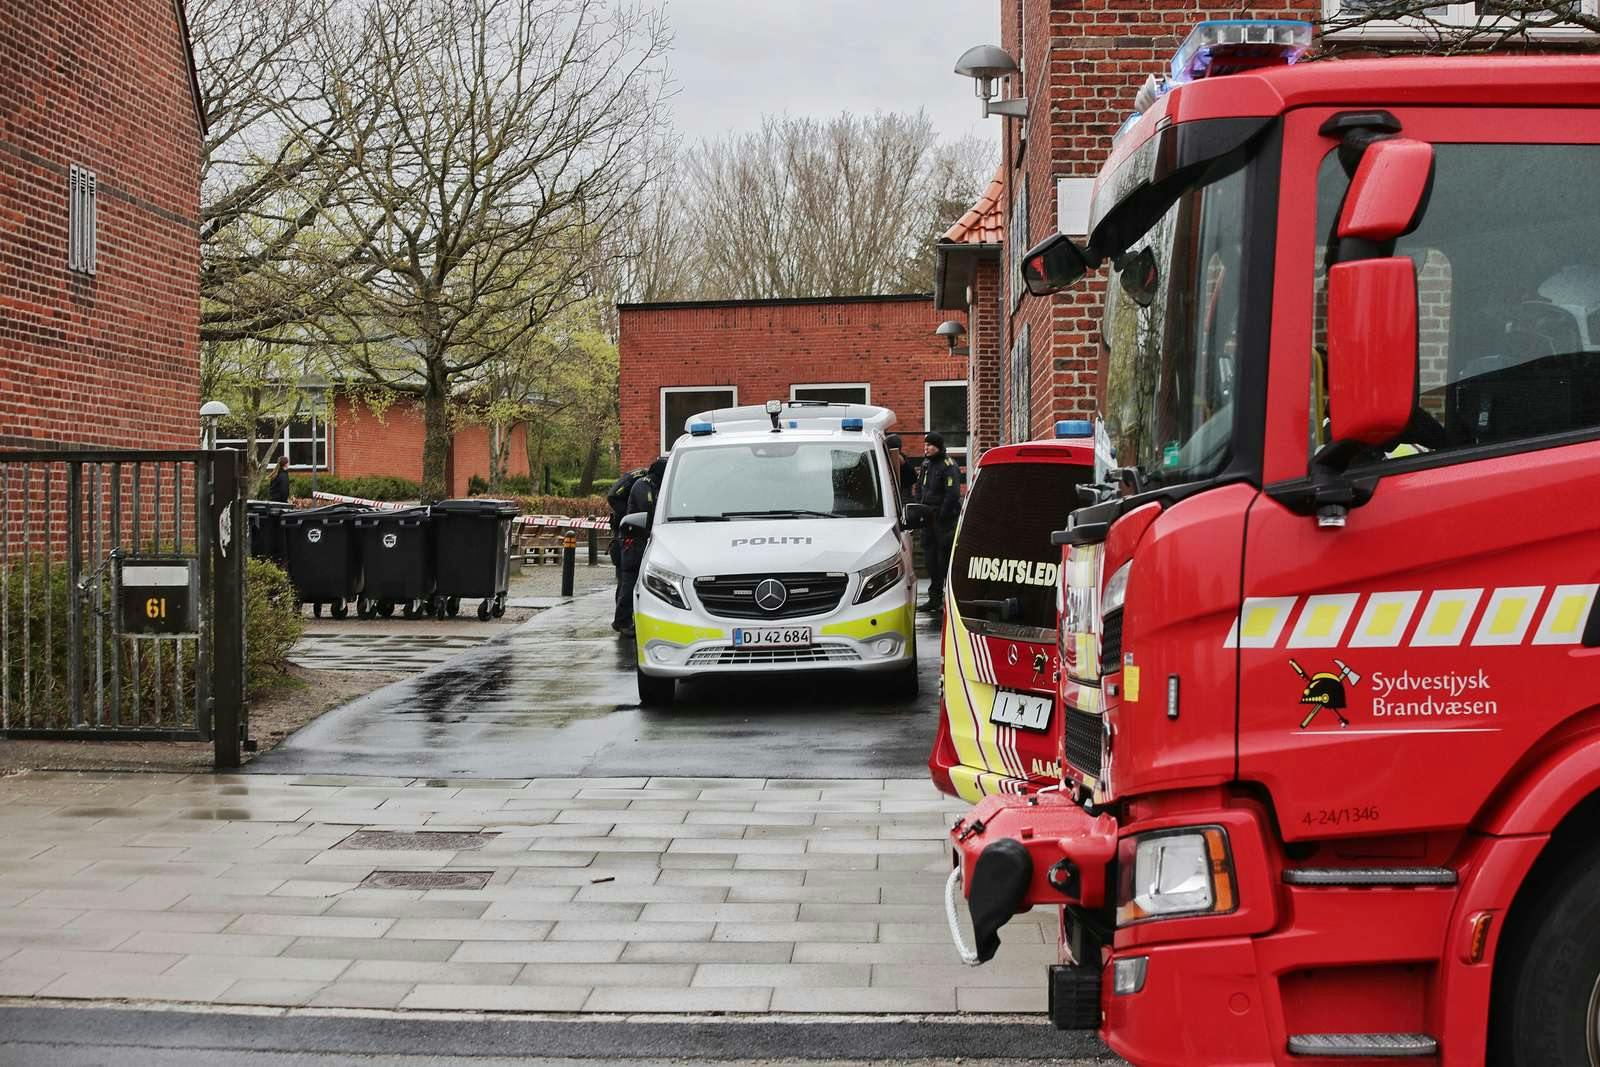 Rørkjær Skole i Esbjerg er tirsdag blevet afspærret efter fundet af seks syrebomber.